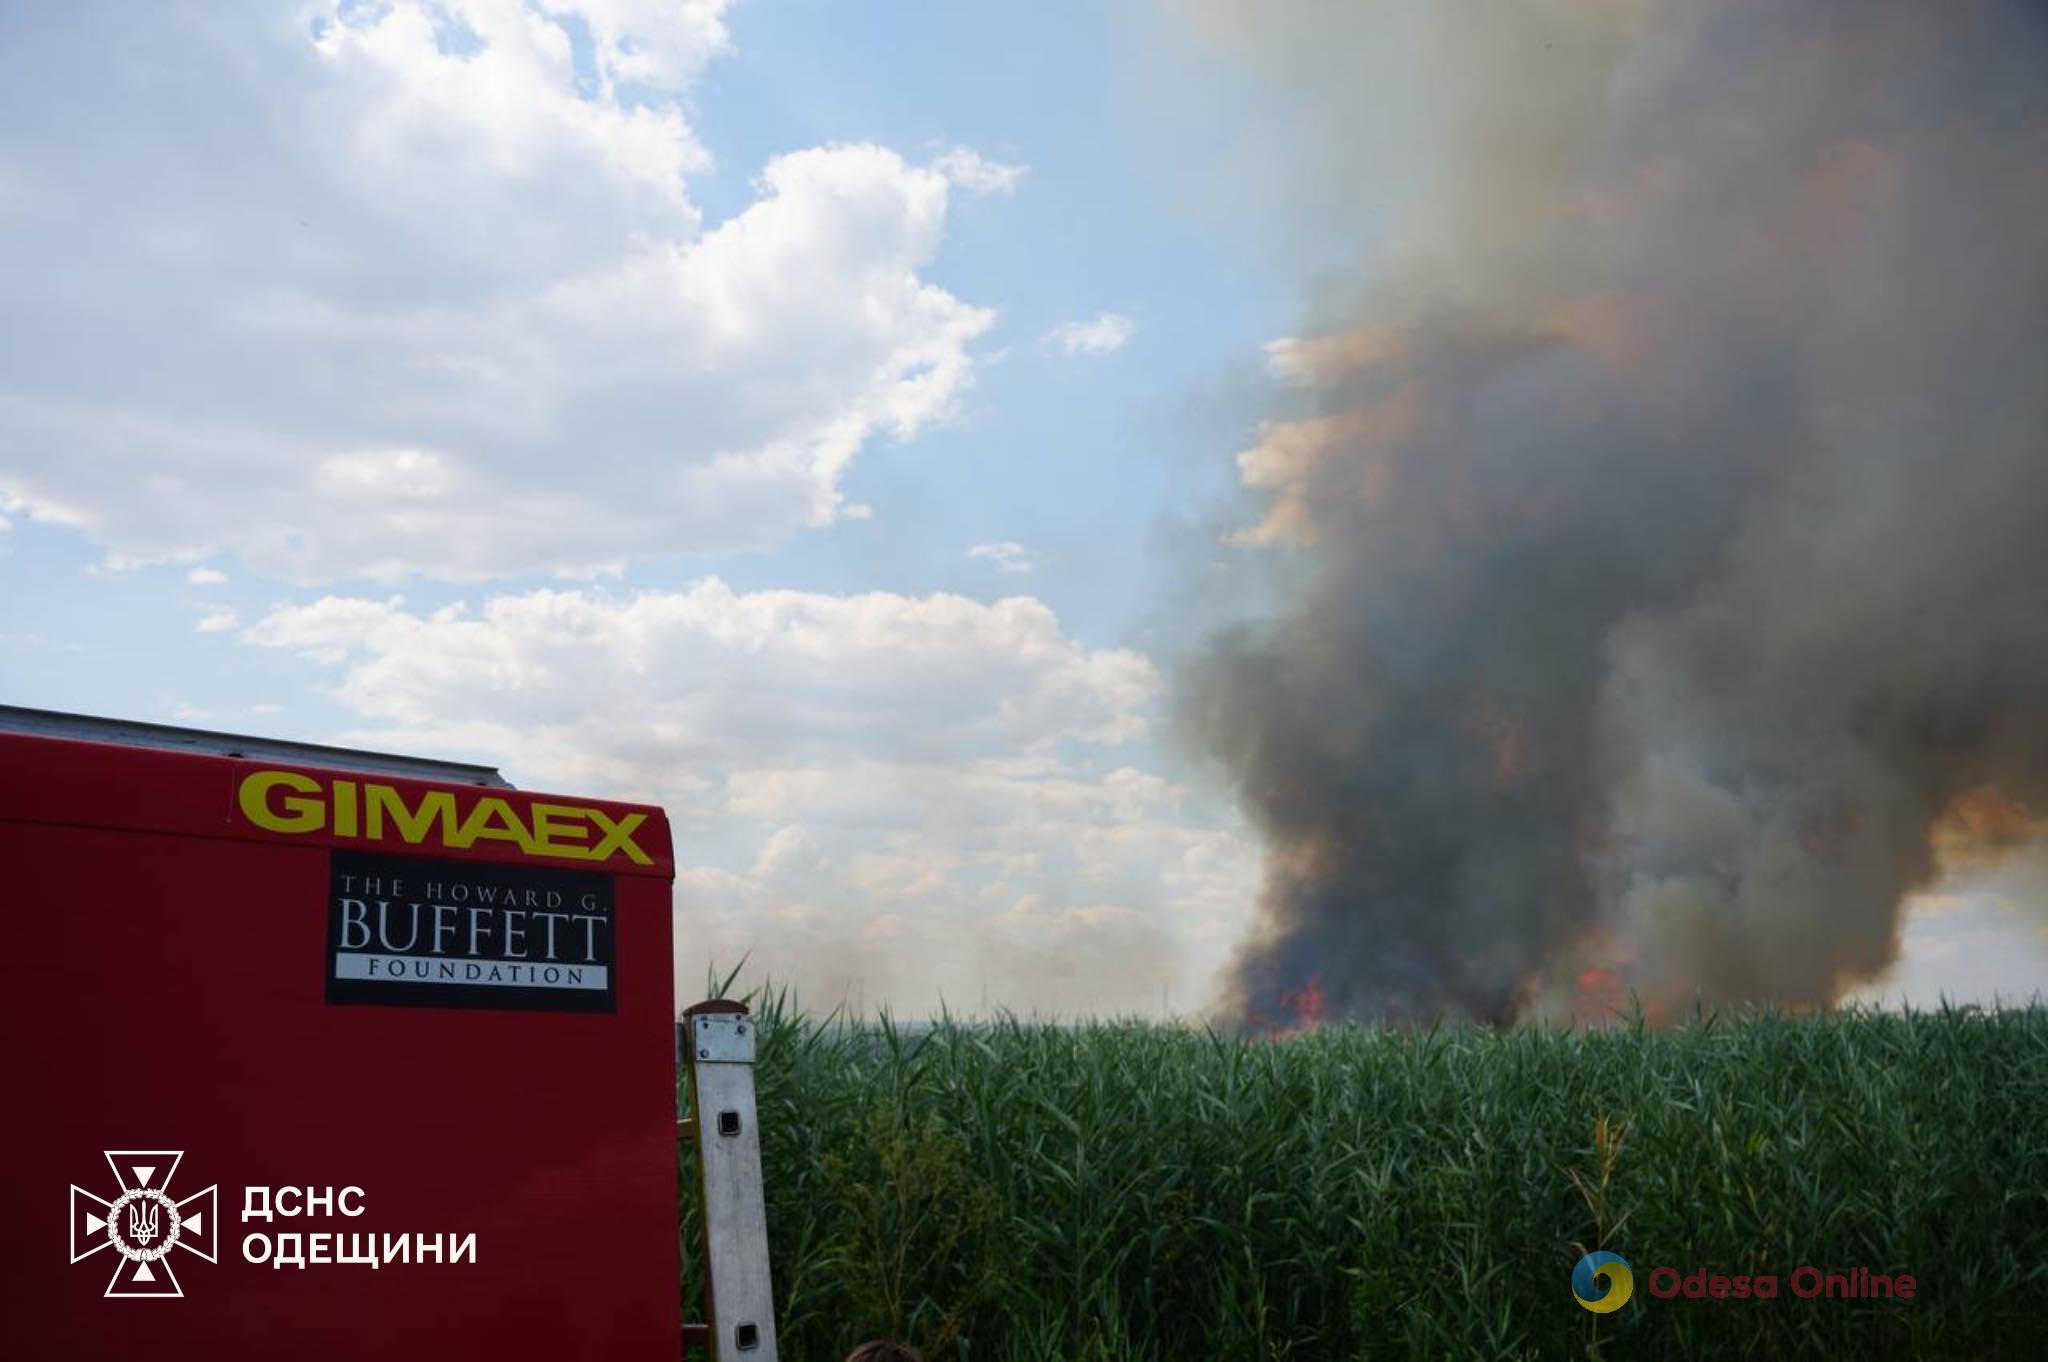 Больше шести часов одесские спасатели боролись с пожаром на полях орошения (фото, видео)